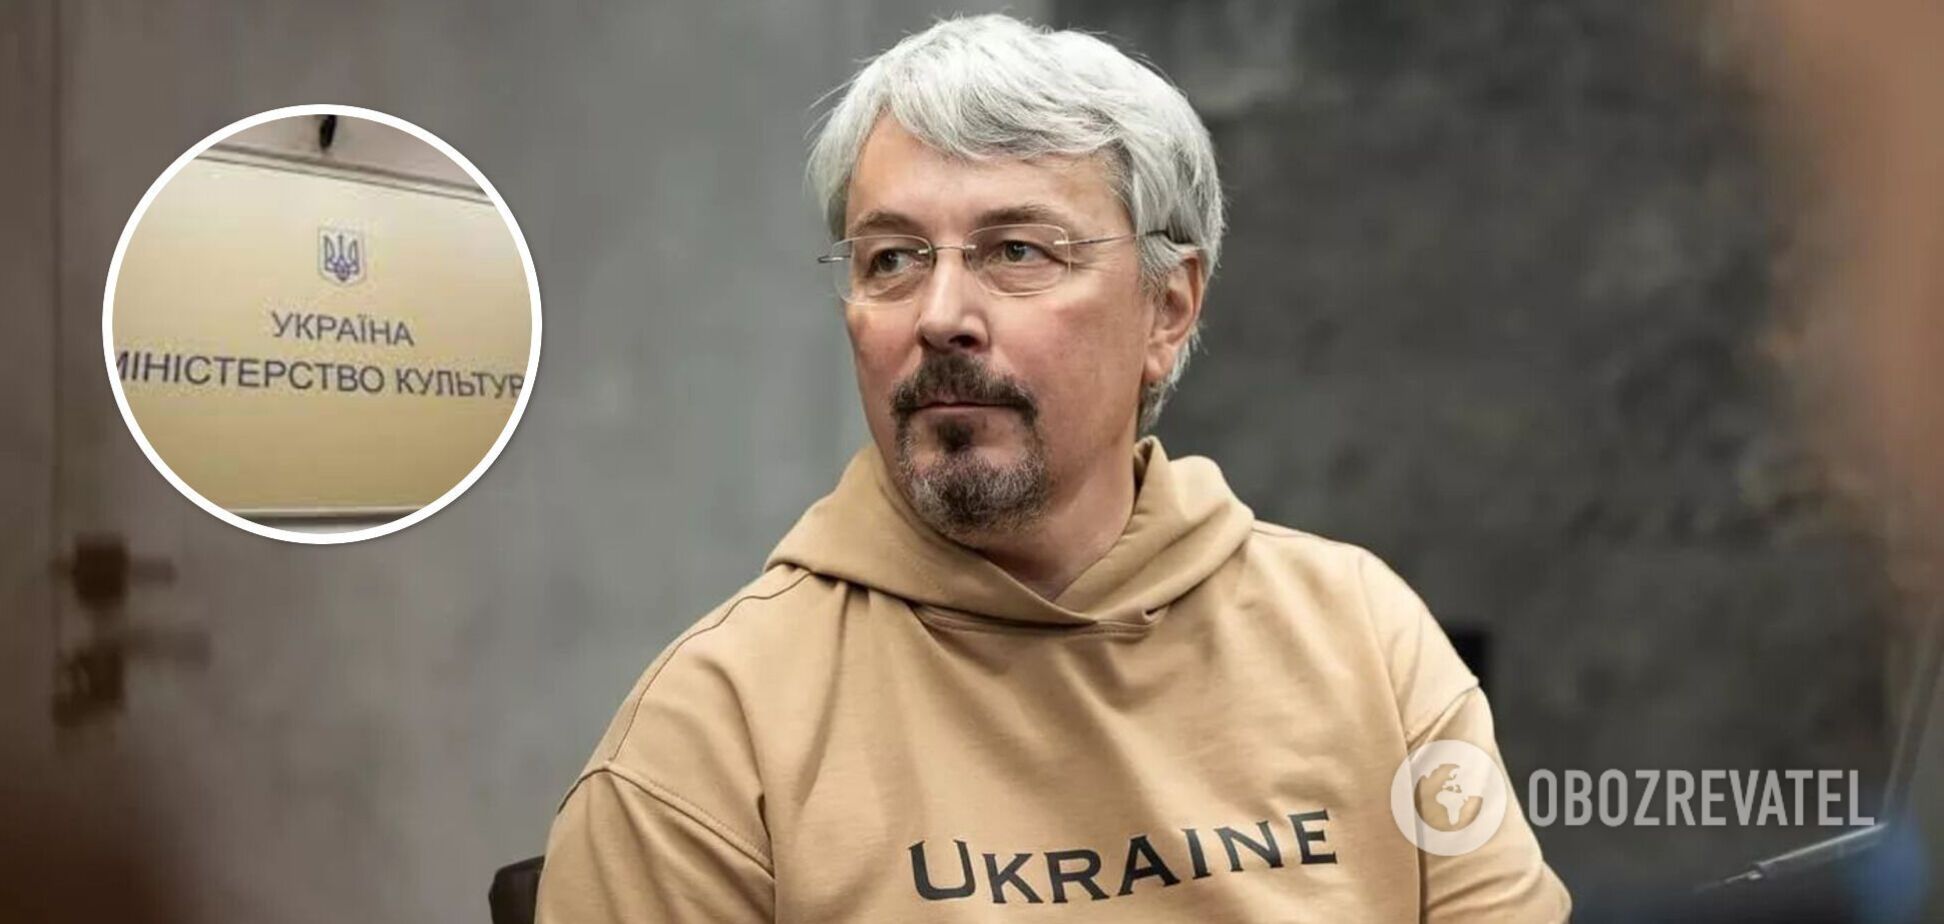 Ткаченко подал в отставку 'из-за волны недоразумения'